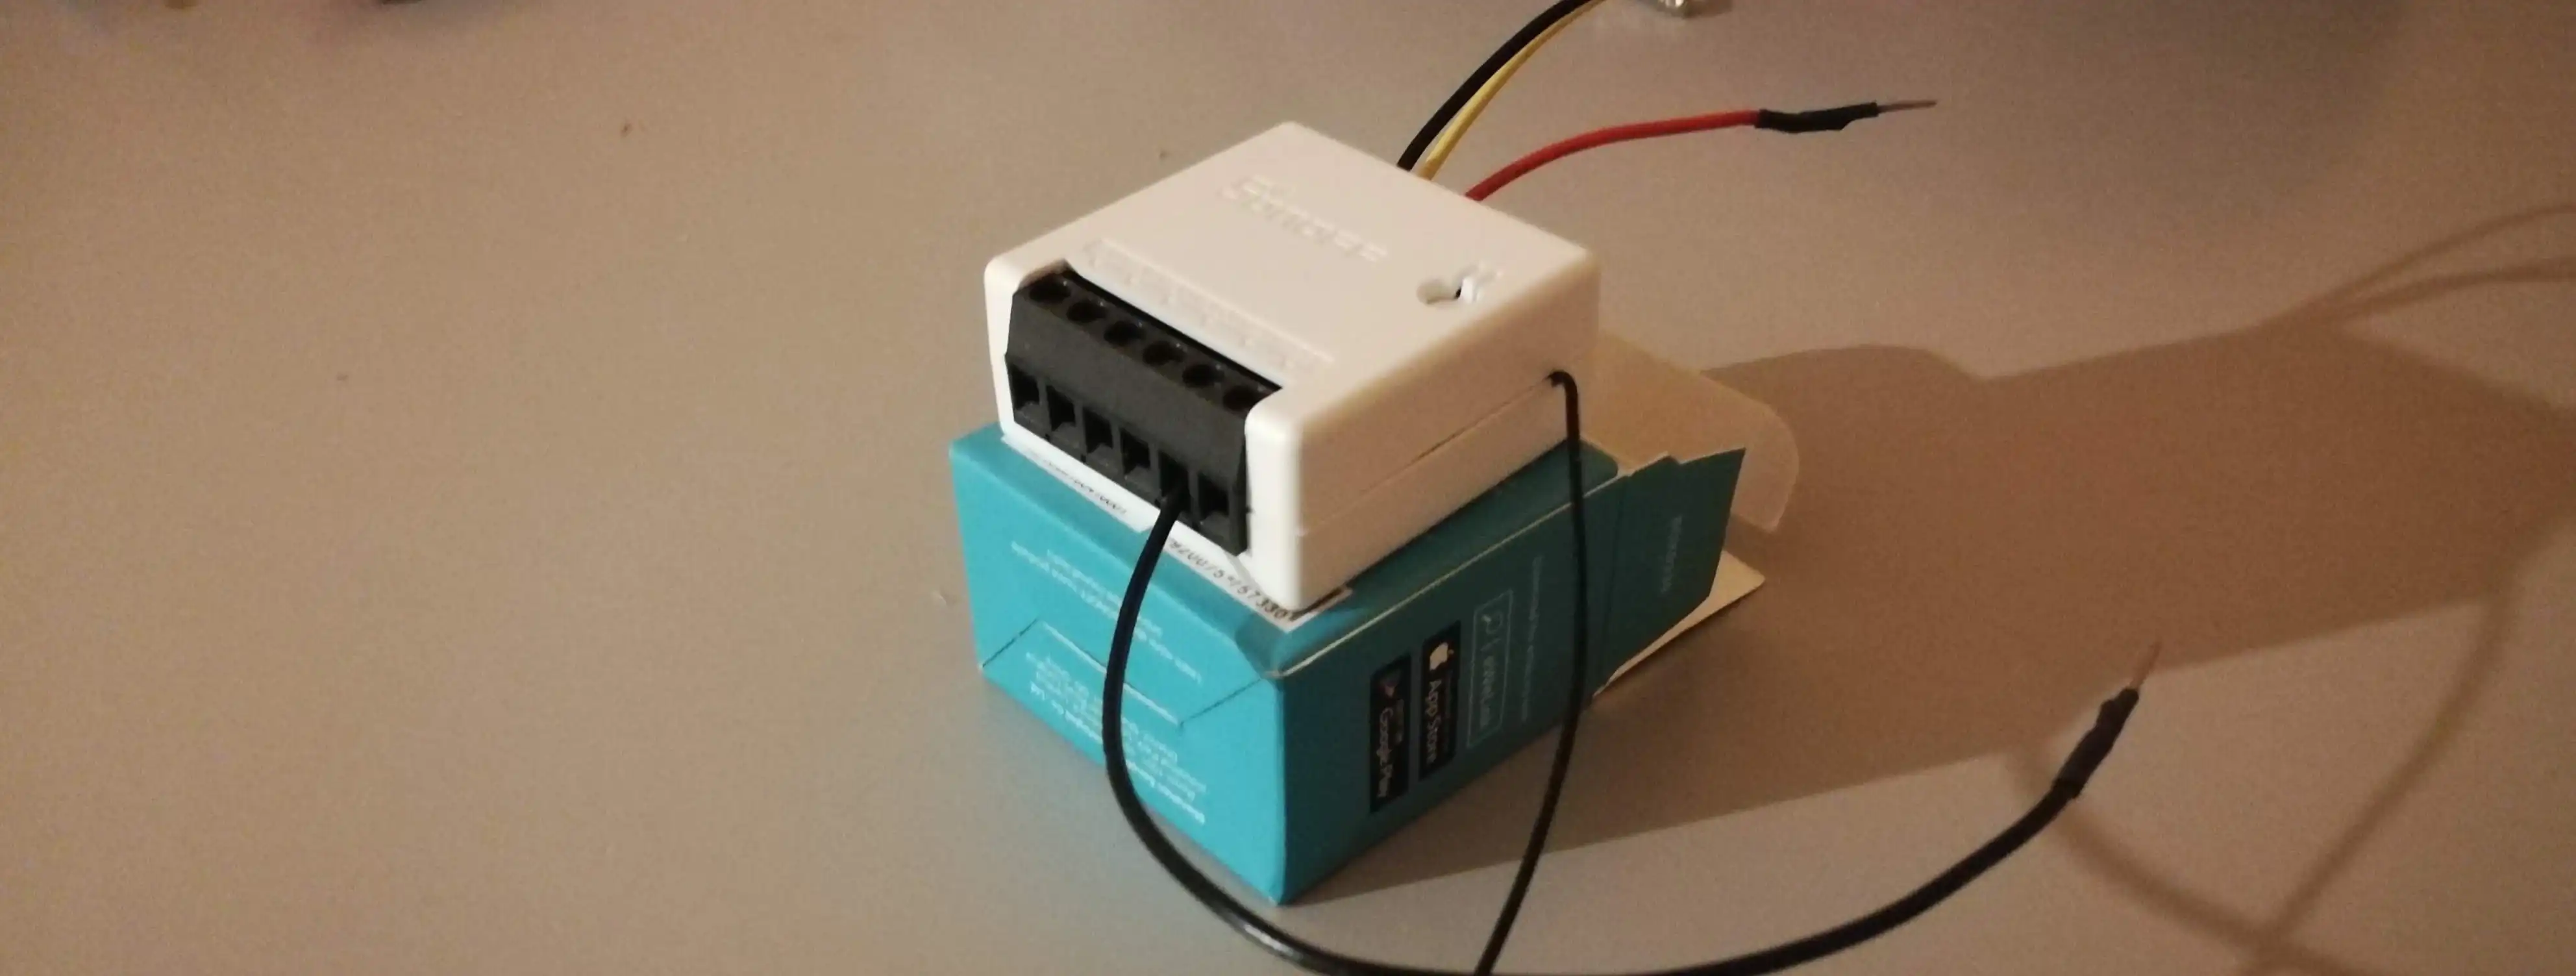 Home Automation System - Misuriamo la temperatura con il SONOFF mini - Doppio sensore...